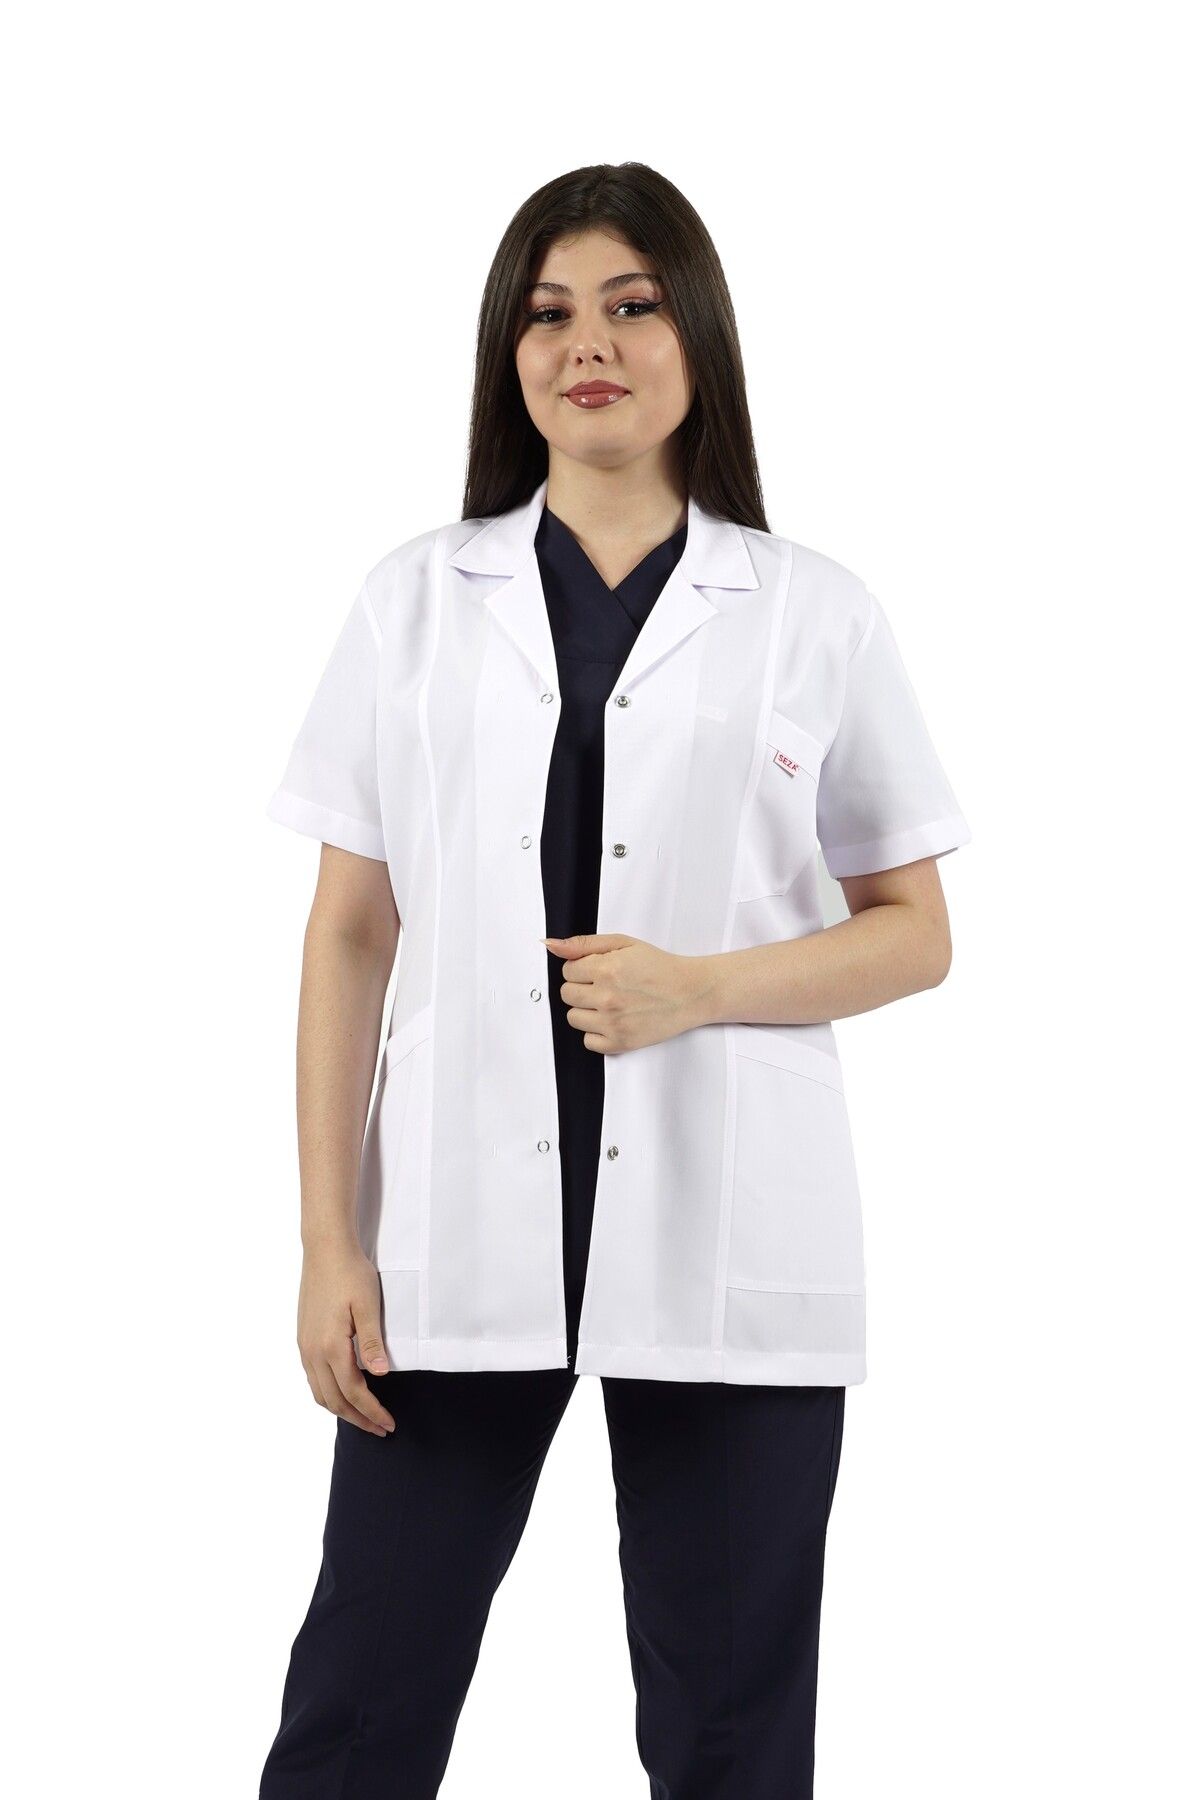 SEZA TEKSTİL Gömlek Yaka Kısa Kol Beyaz Kadın Doktor Öğretmen Hemşire Laboratuvar Önlüğü